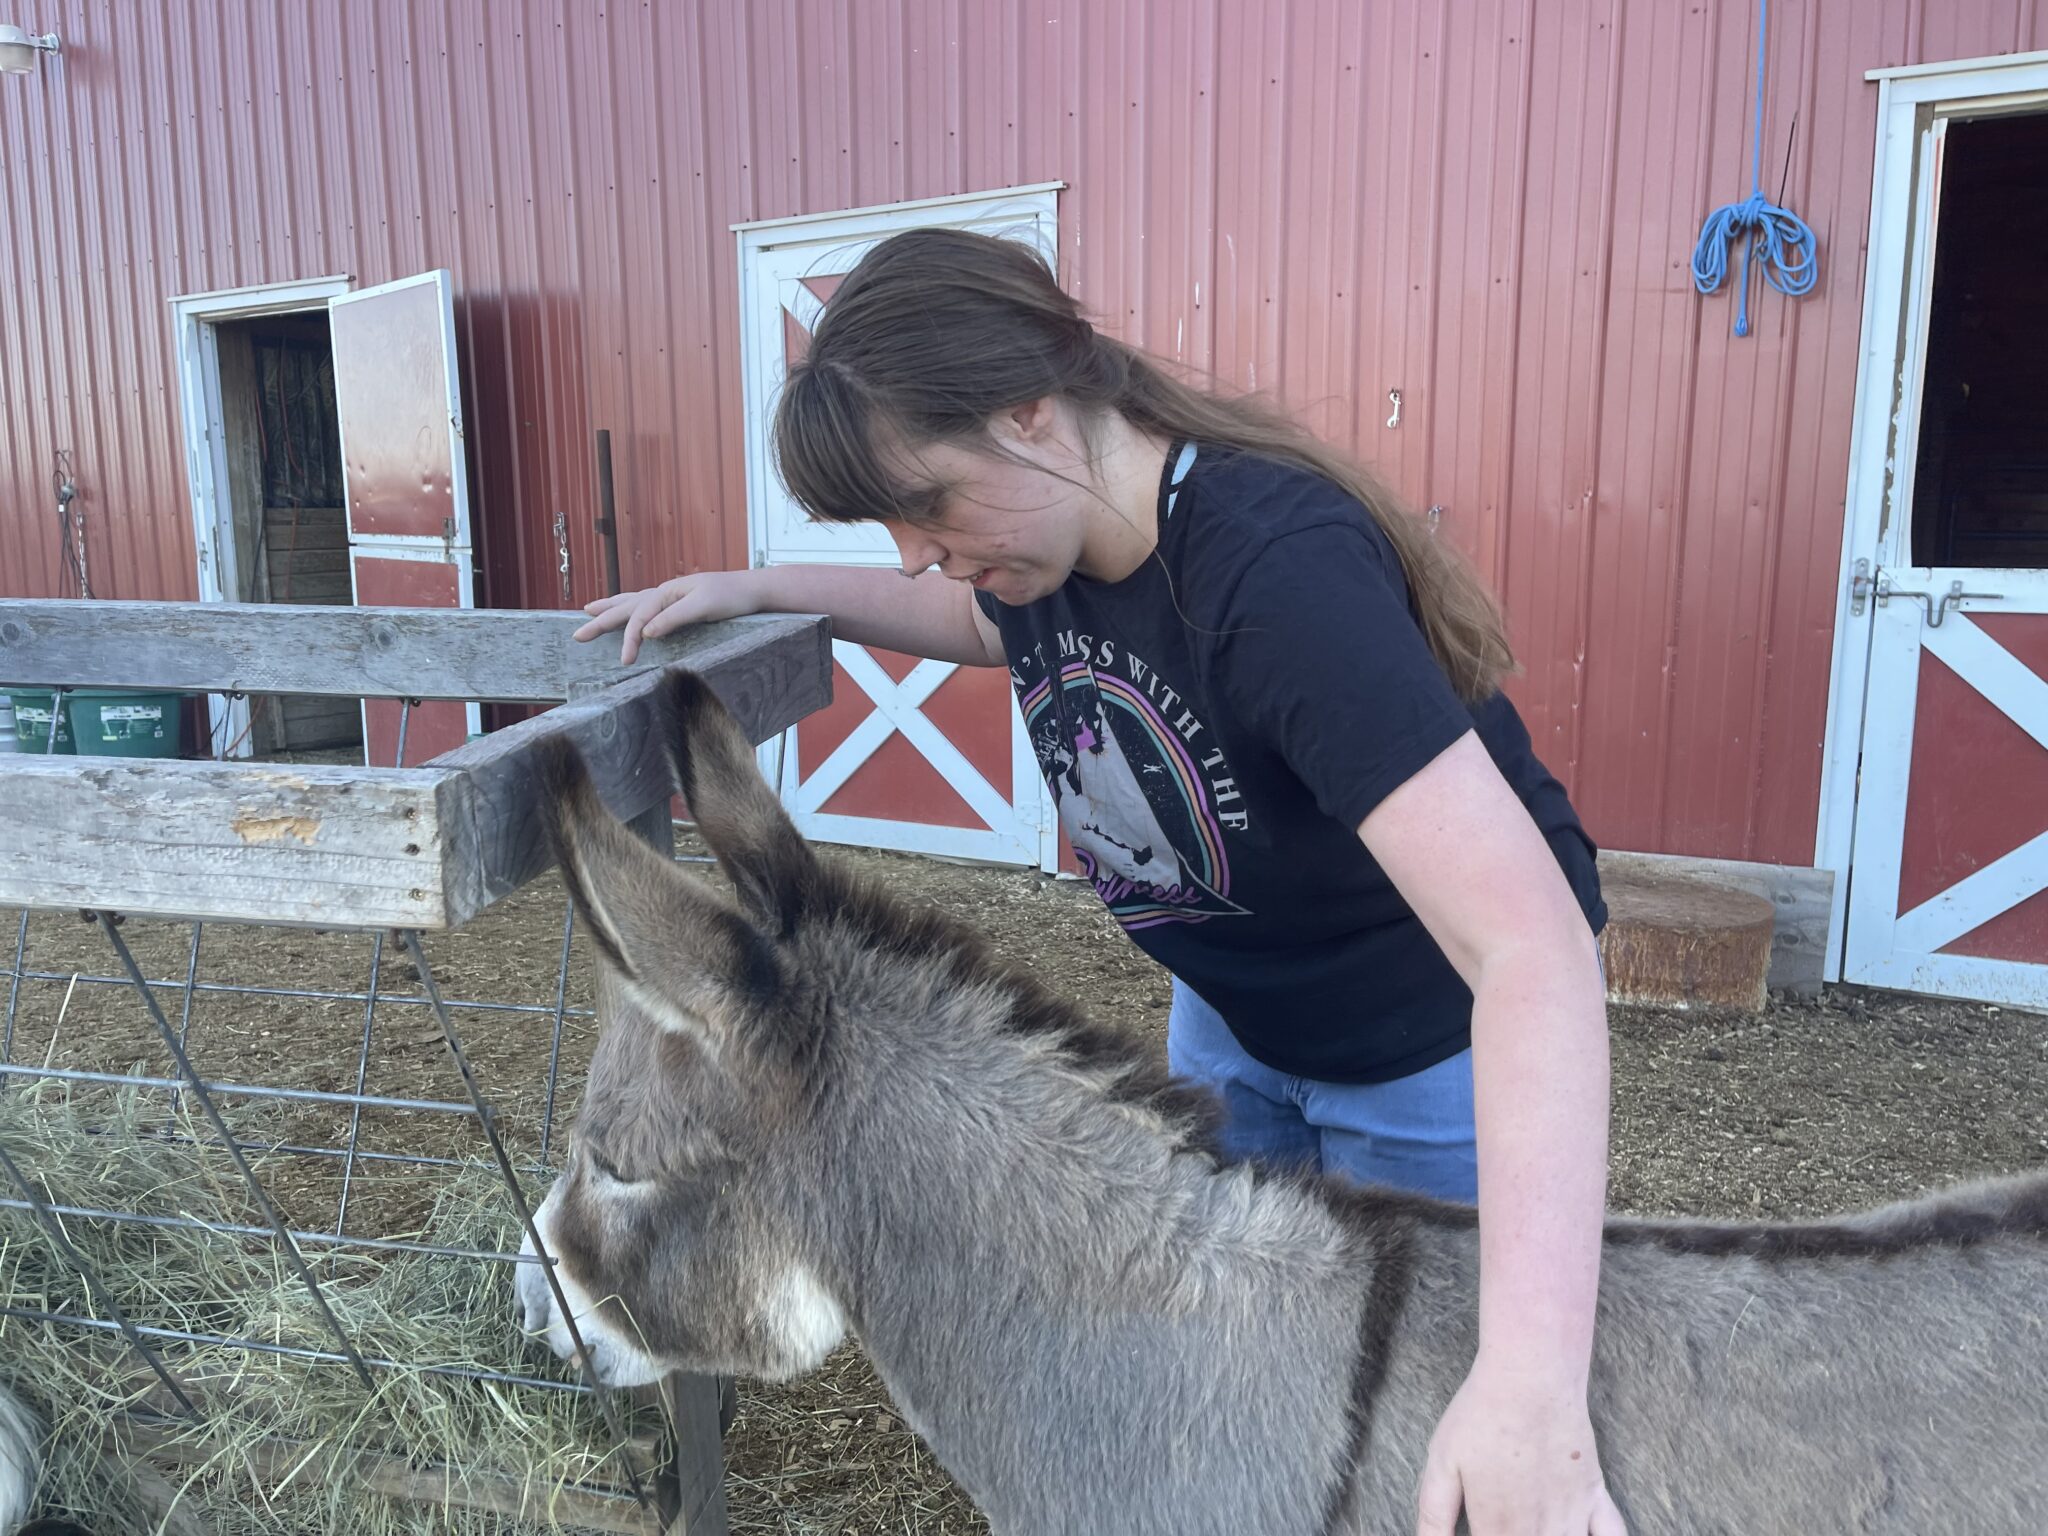 Cheyenne at Midnight Farm feeding a donkey